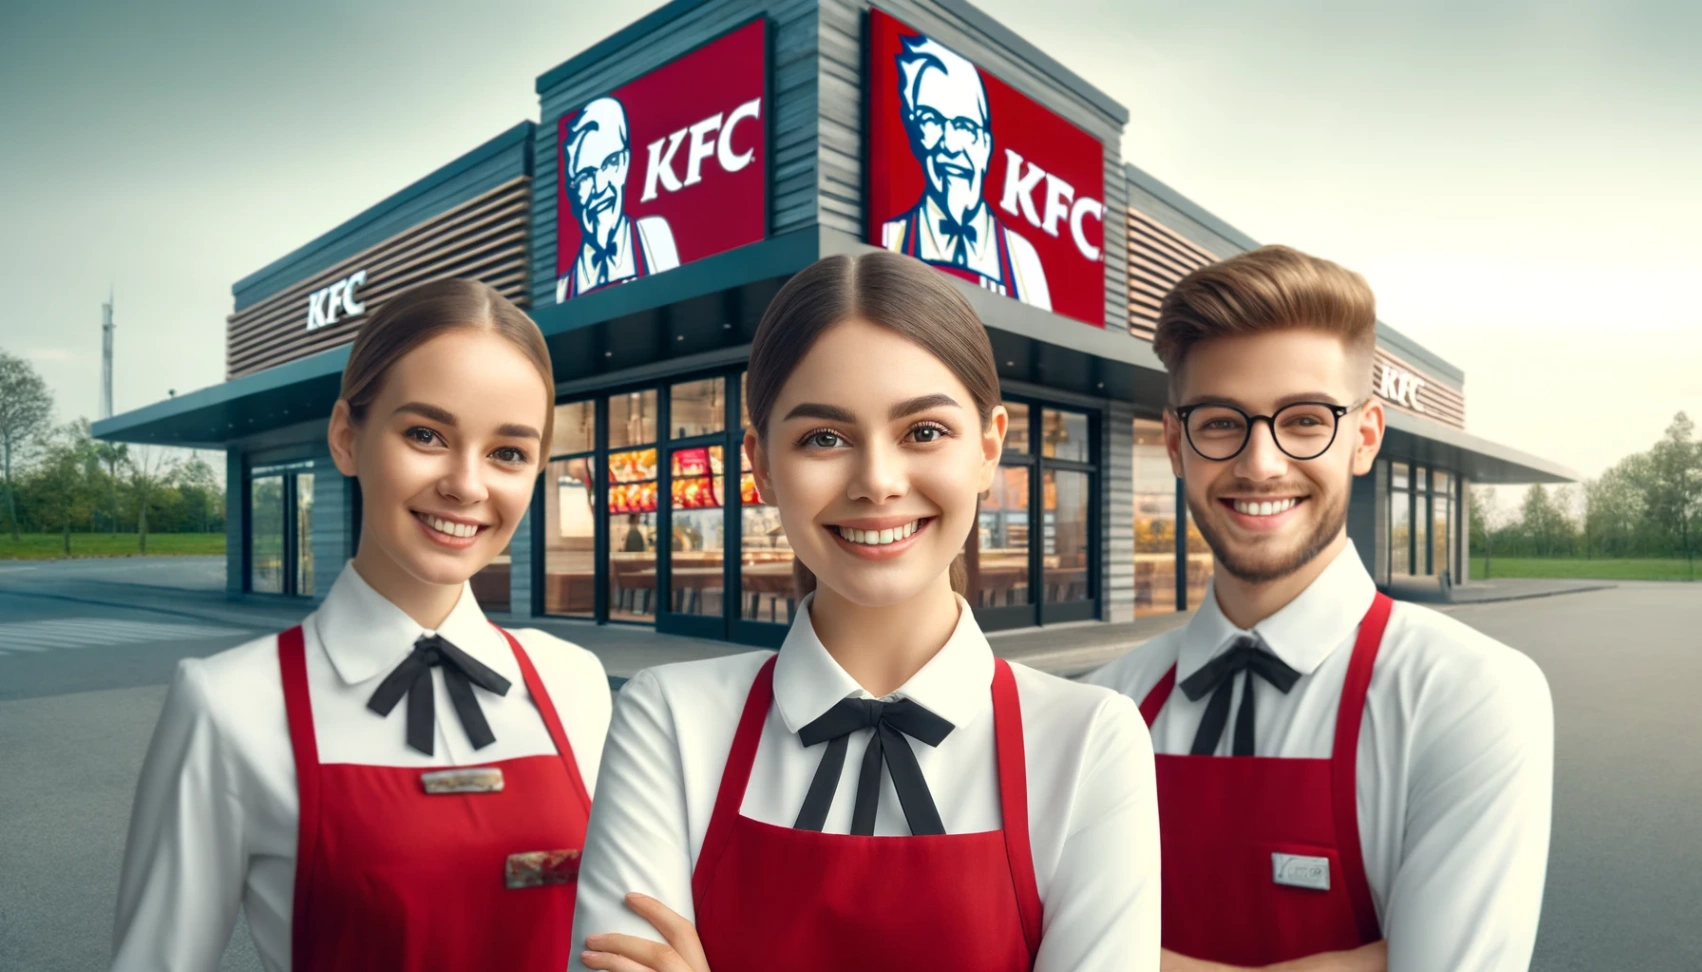 KFC - Erfahren Sie, wie Sie sich um Jobs bewerben